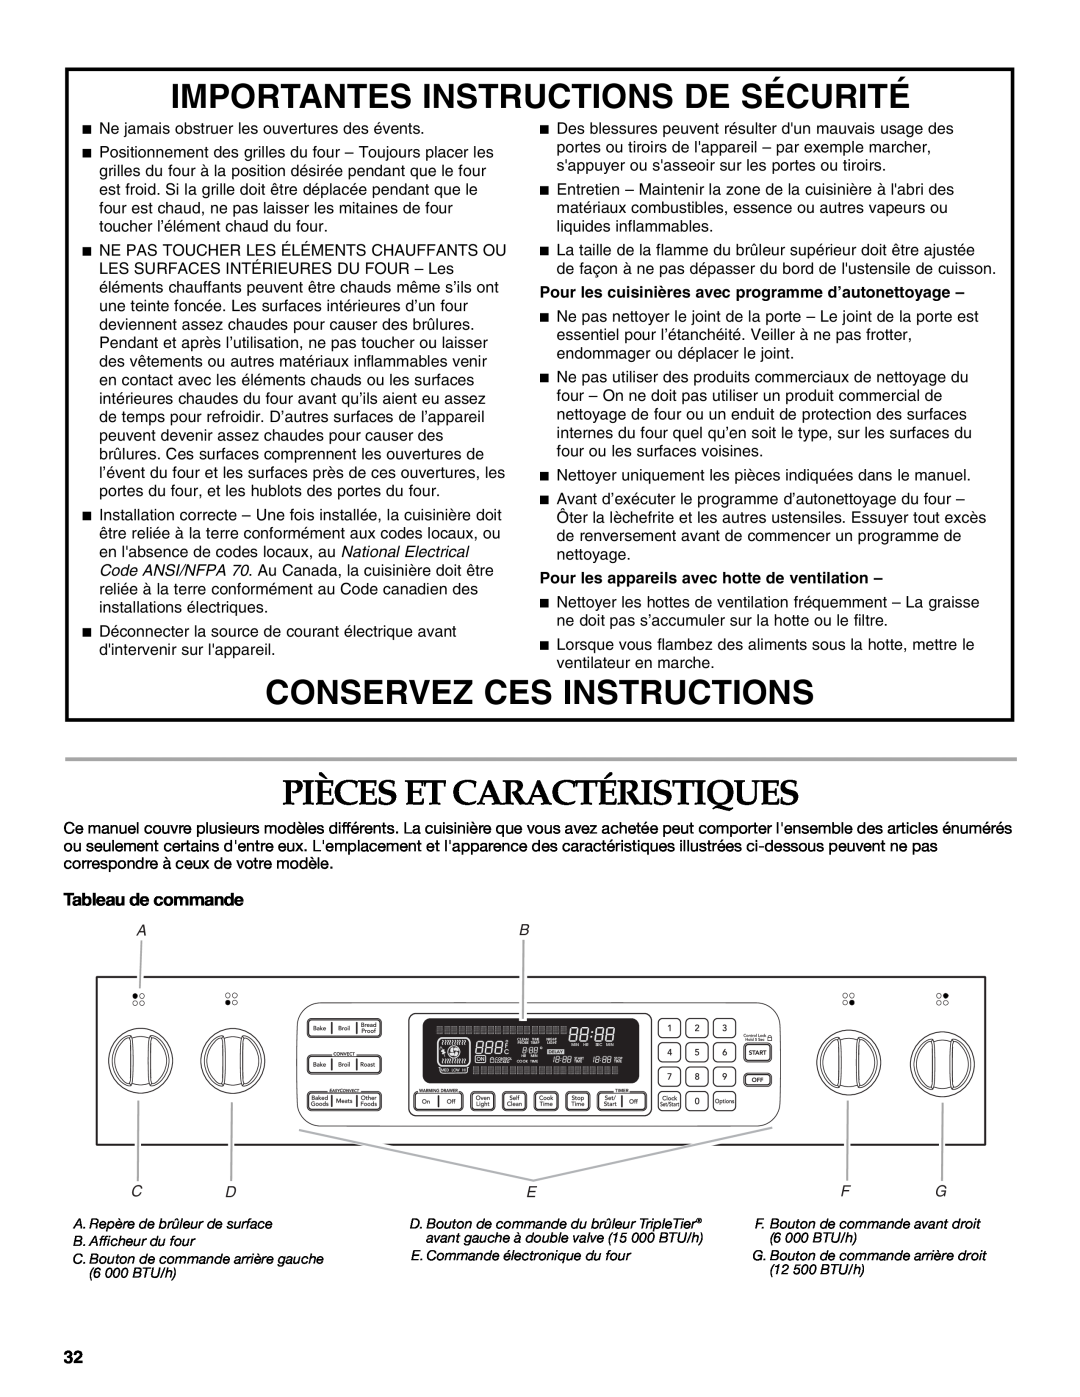 KitchenAid KDRS807 manual Pièces Et Caractéristiques, Importantes Instructions De Sécurité, Conservez Ces Instructions 